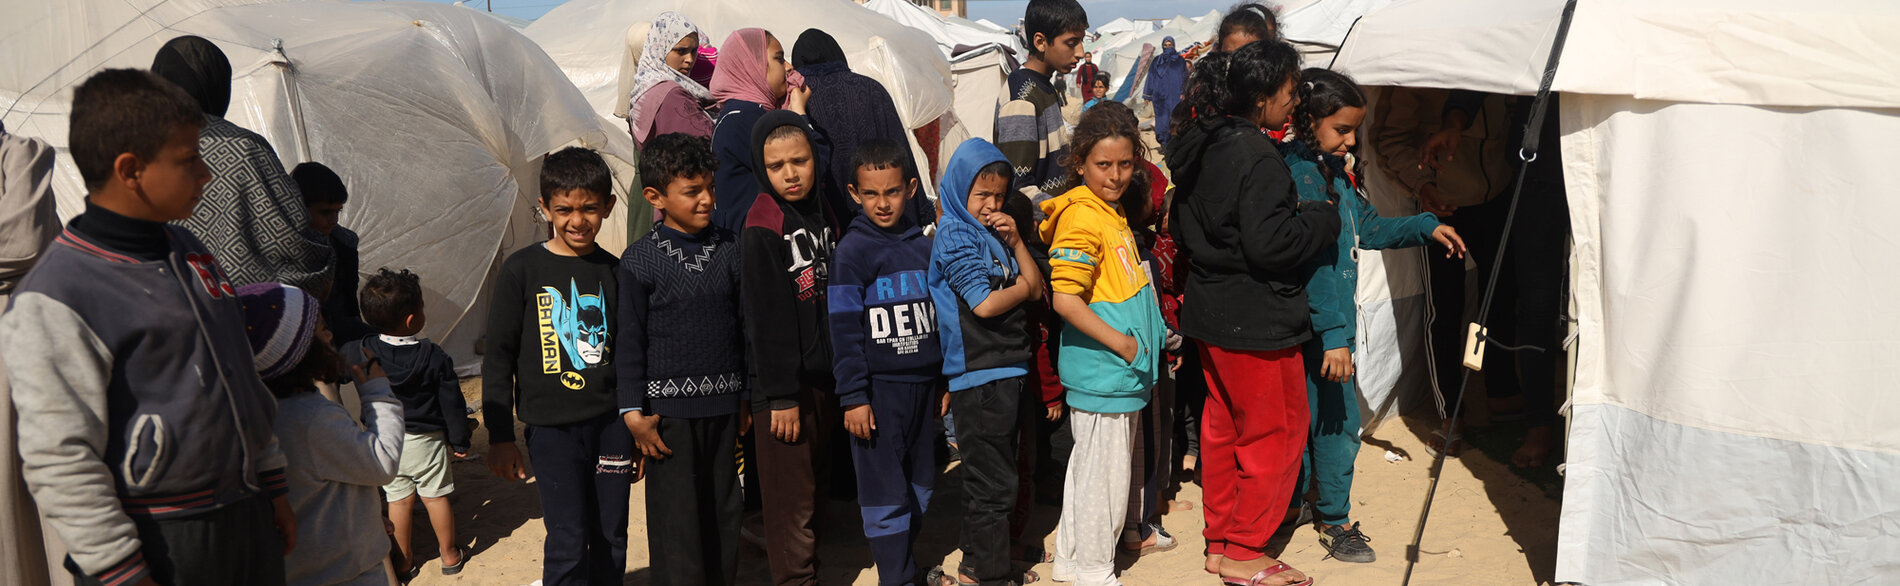 ילדים בכניסה למרפאה באוהל ברפיח, ממתינים בתור לבדיקות סקר לתת-תזונה ולהפנייה לטיפול, ככל שיידרש. צילום: יוניסף / אל-באבא